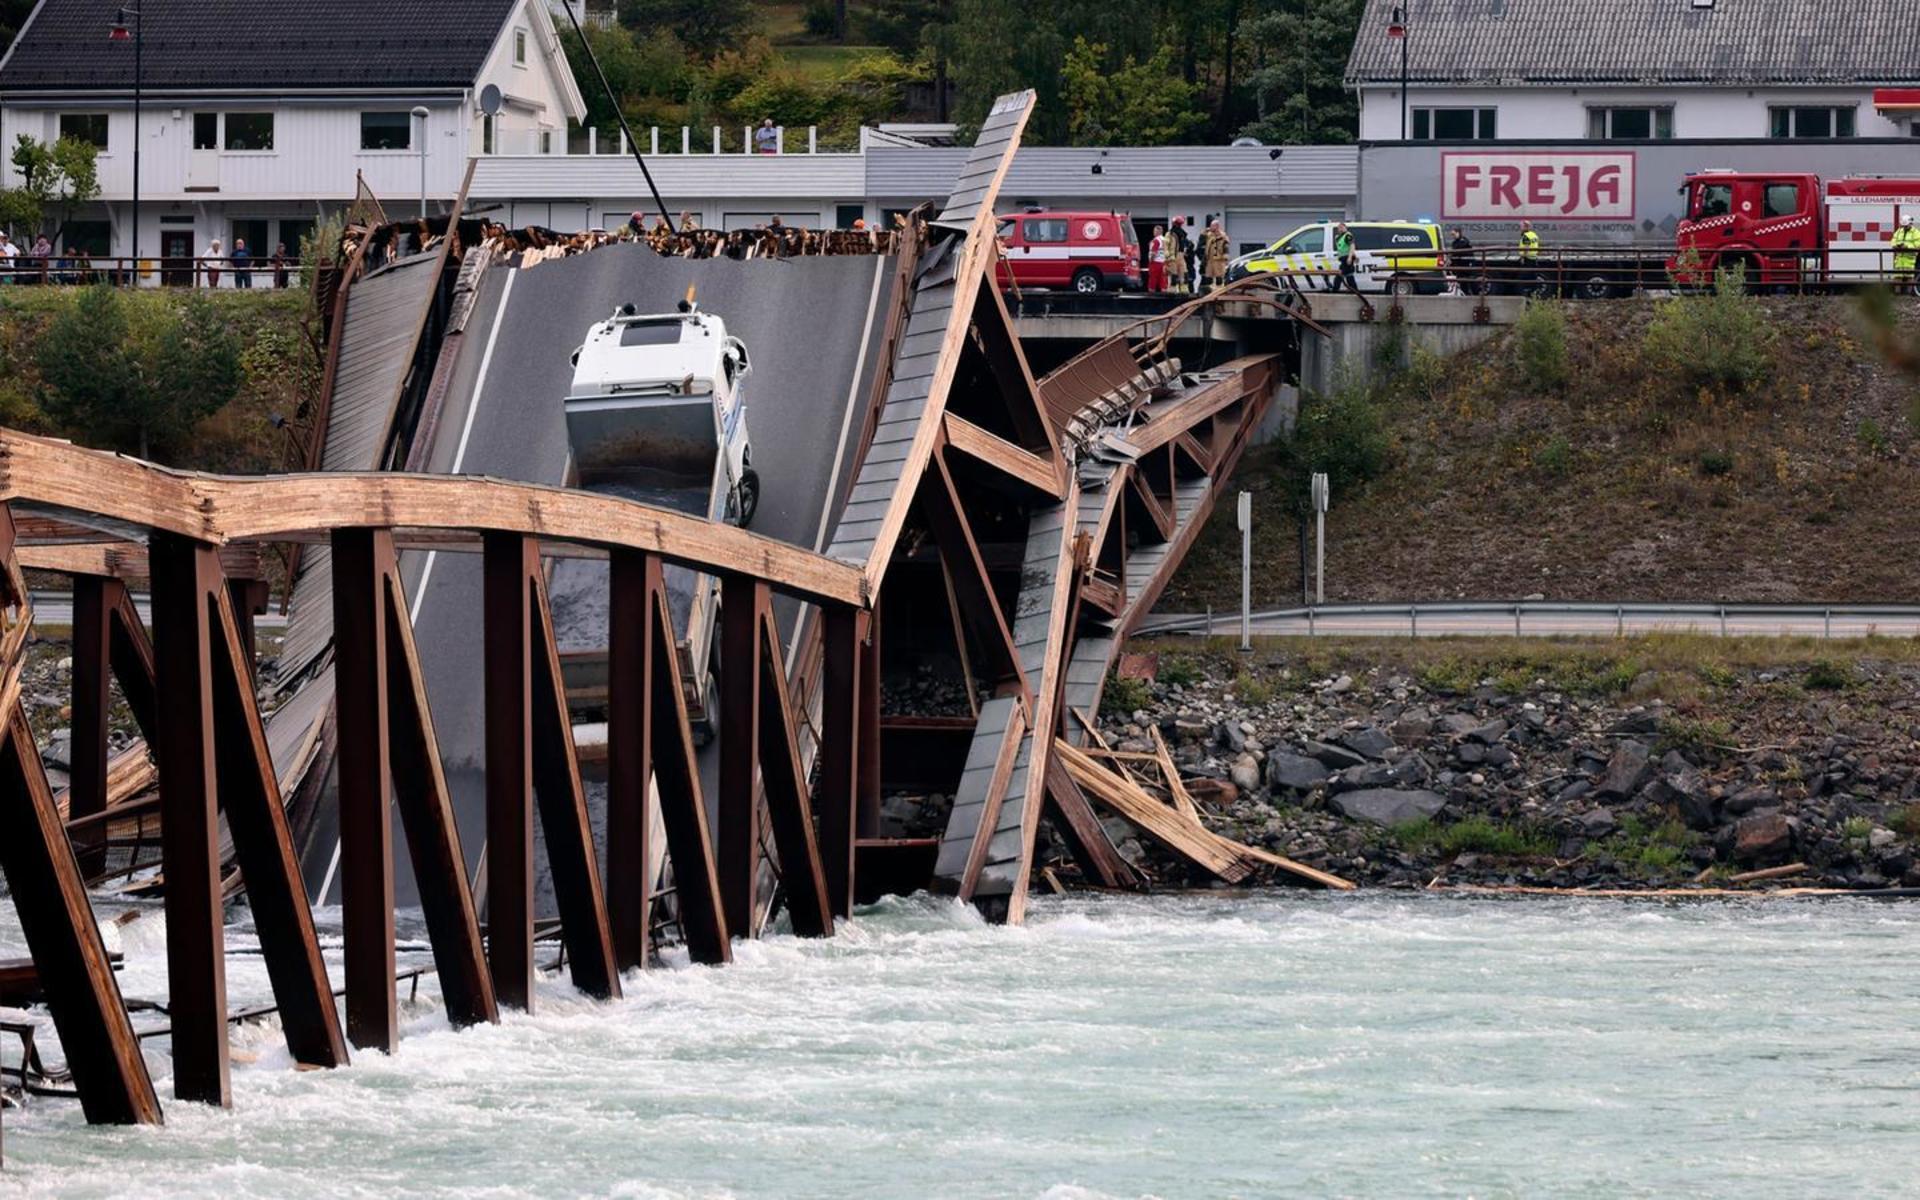 En lastbil och en personbil befann sig på bron när den kollapsade och personbilen ramlade ner i vattnet. Bild: Geir Olsen